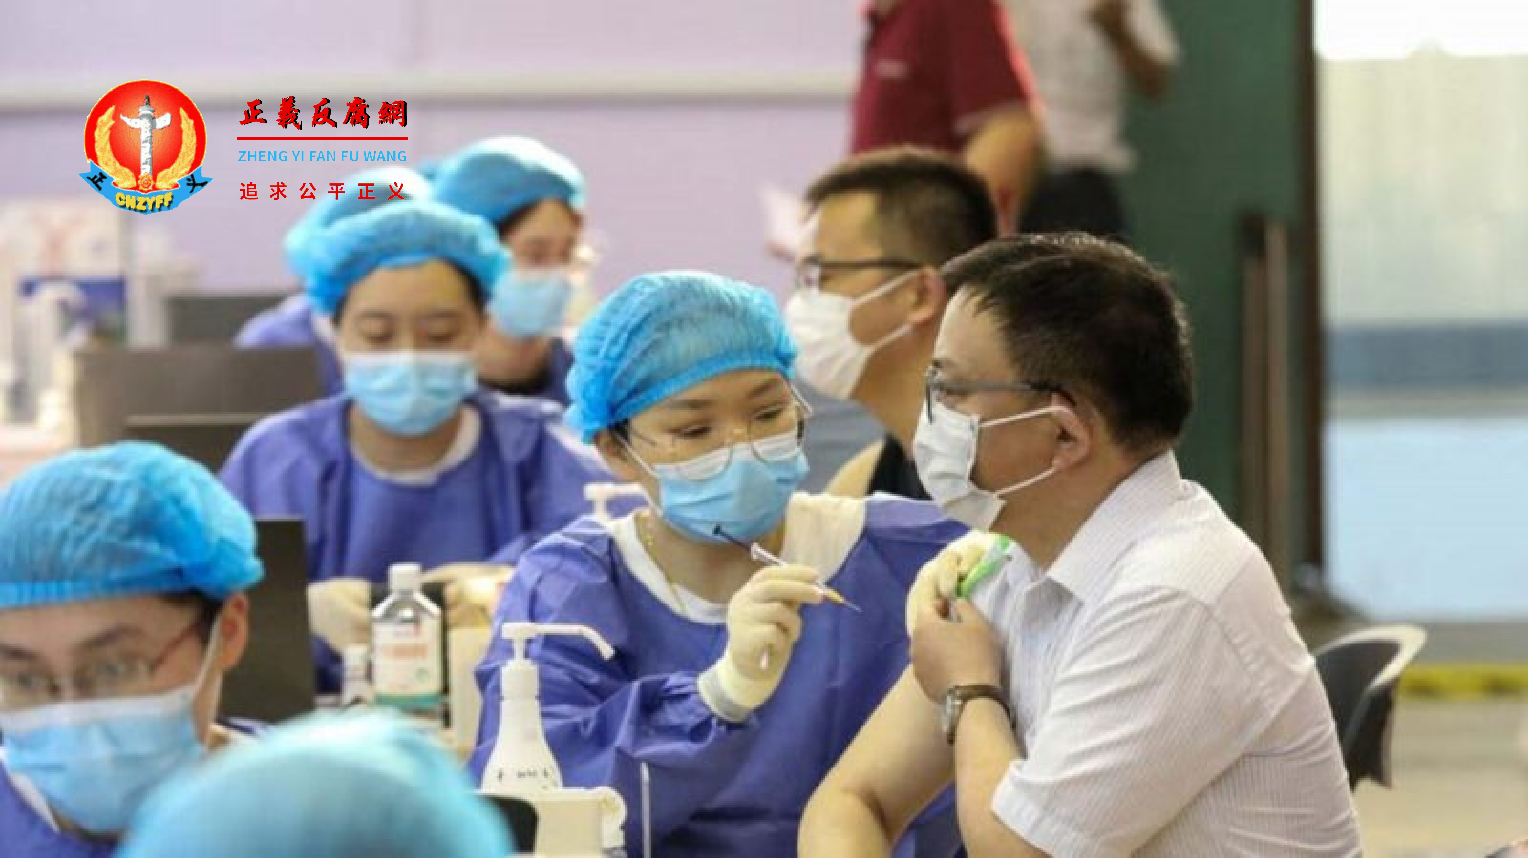 2021 年 7 月 5 日，江苏省南通市某疫苗接种中心的医务人员正在给市民接种肺炎（Covid-19）疫苗。示意图。.png